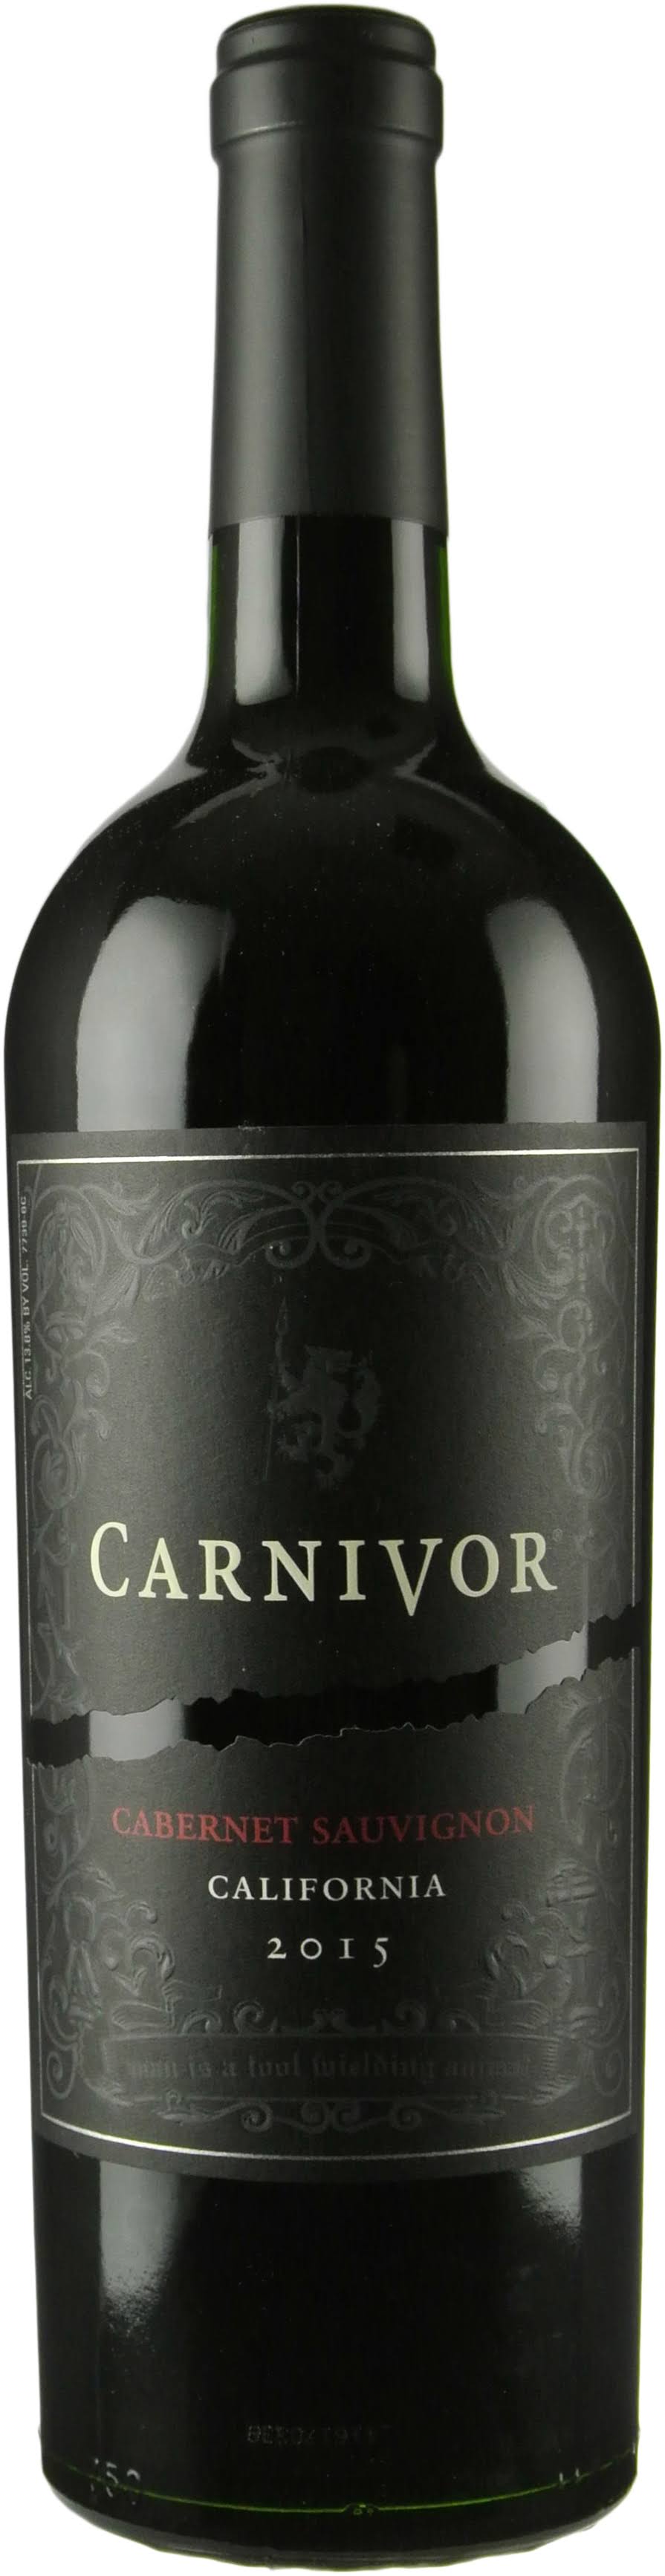 Carnivor Cabernet Sauvignon Red Wine - California, 750ml